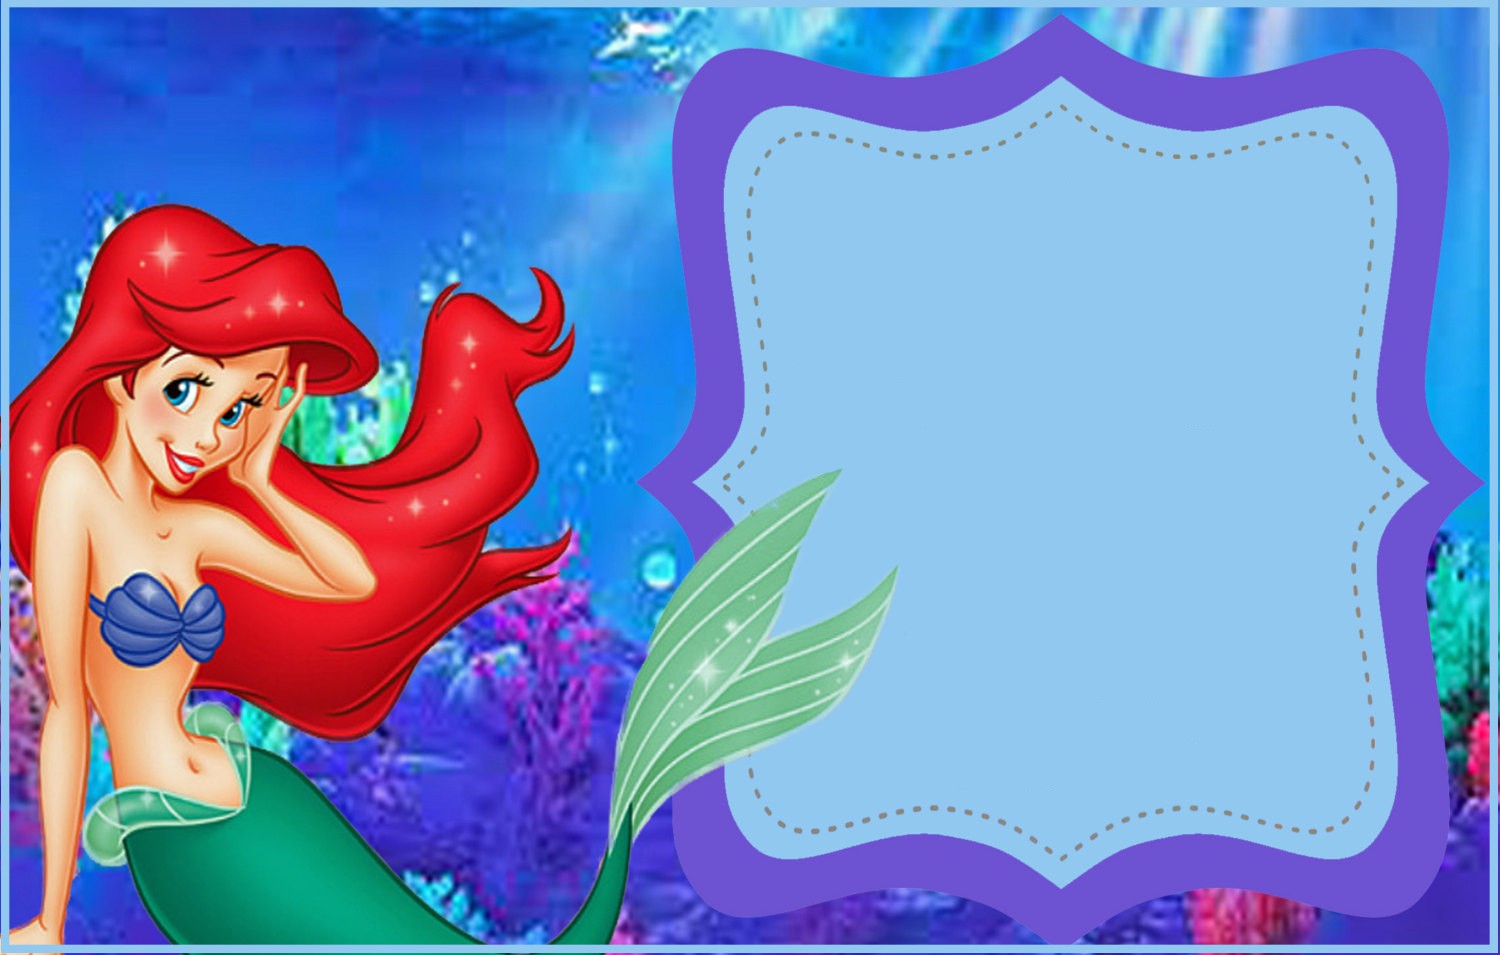 Little Mermaid Invitation Template Free